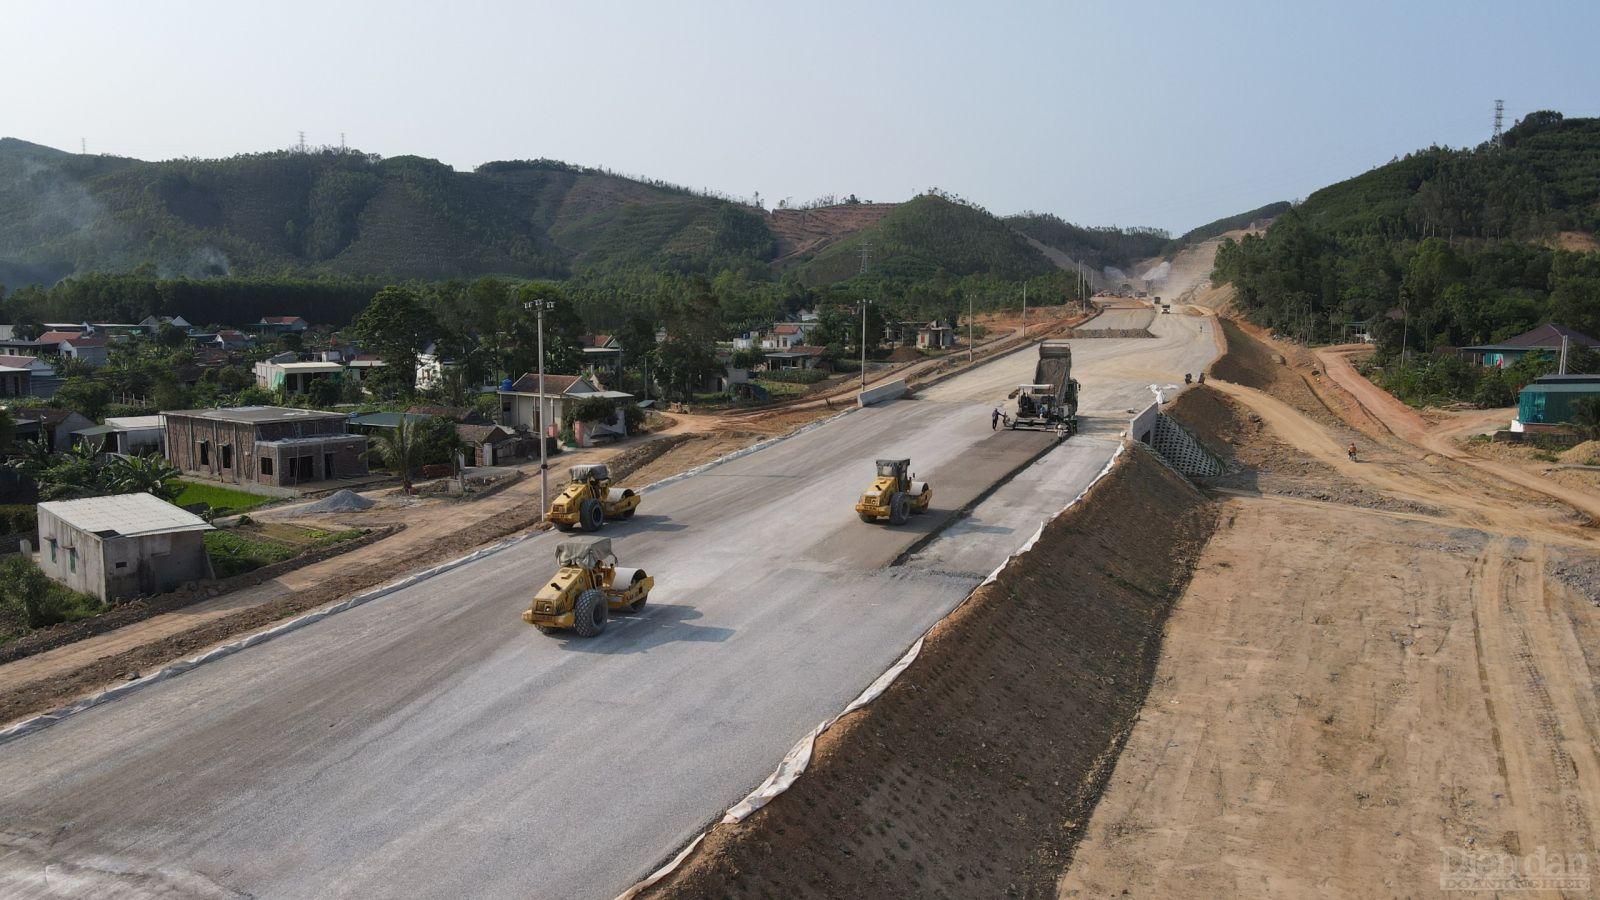 Trong những năm gần đây, cùng với sự quan tâm của Trung ương, 03 tỉnh Thanh Hoá - Nghệ An - Hà Tĩnh đã tập trung thu hút đầu tư hạ tầng giao thông, khơi dậy phát triển tiềm năng của từng địa phương (ảnh: Thi công cao tốc Bắc - Nam đoạn qua Nghệ An)